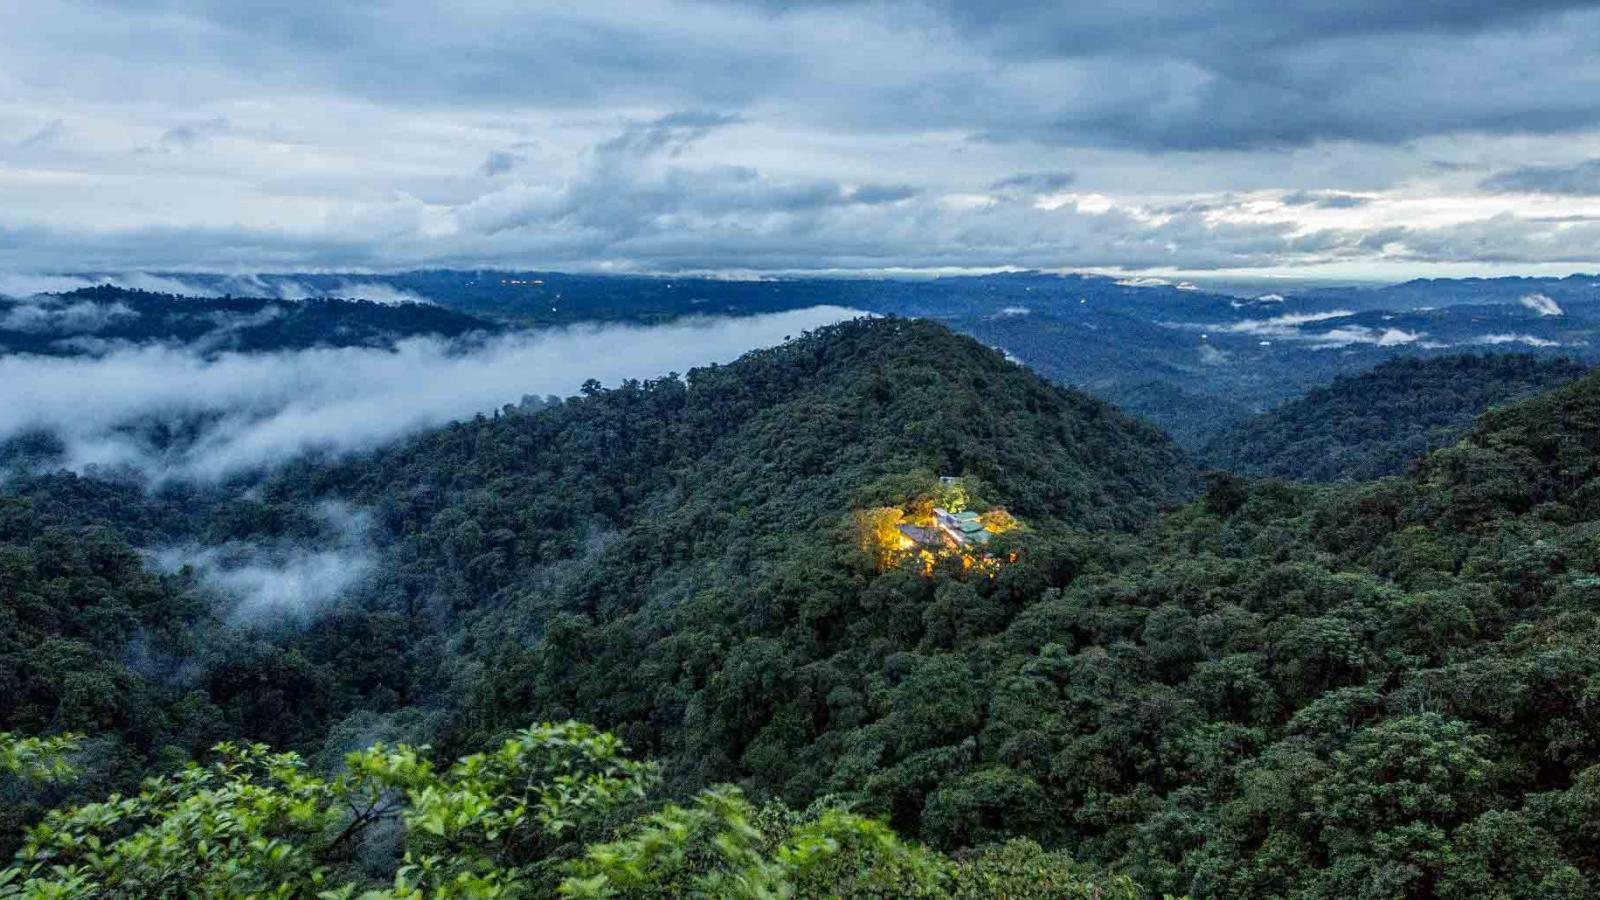 Cloud Forest revelations in Ecuador